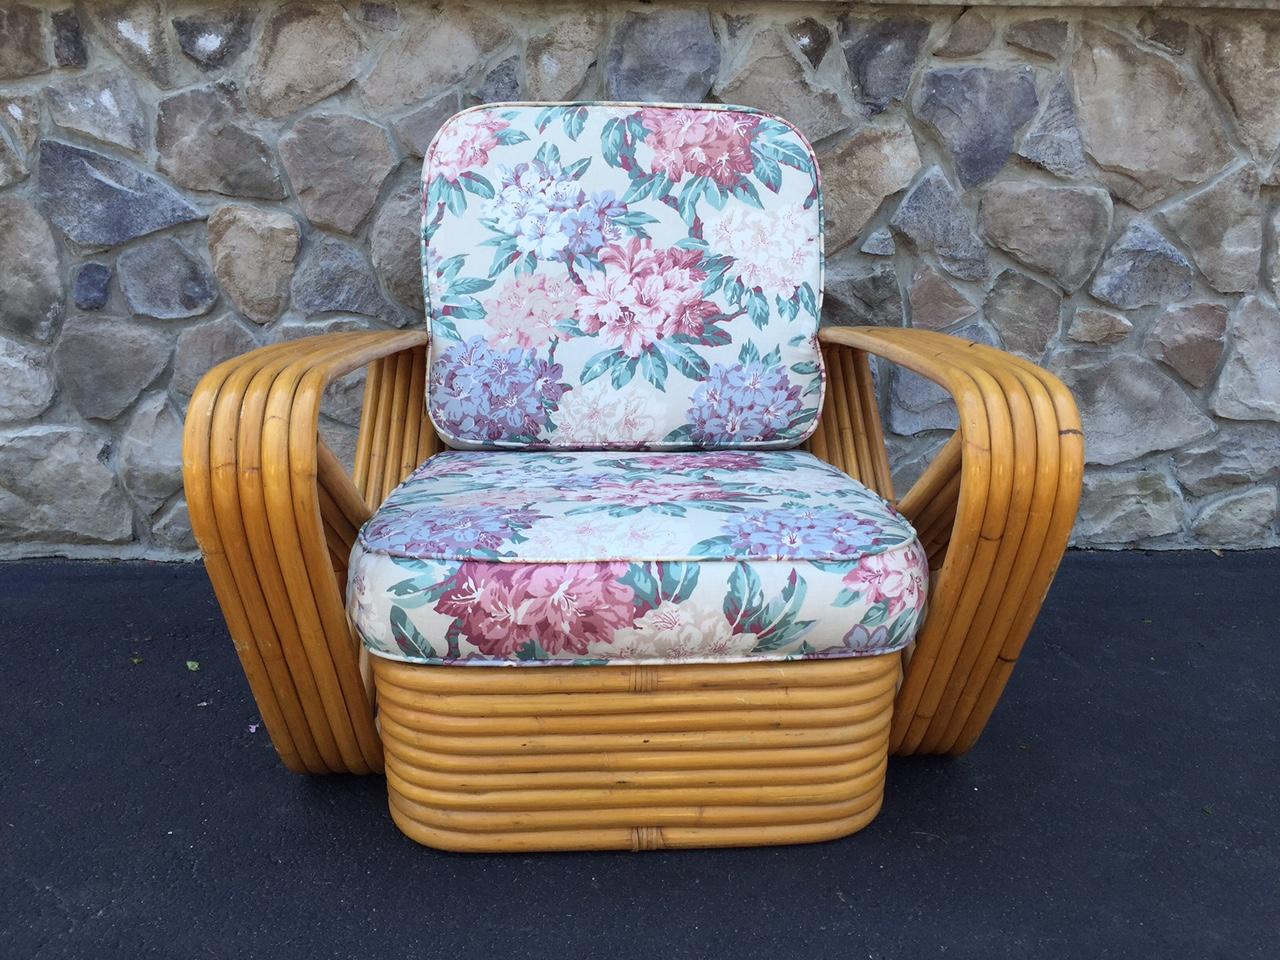 Paire de chaises longues carrées en rotin de type bretzel dans le style de Paul Frankl. Les chaises ont une base en rotin empilé avec des coussins originaux.
Mesures : 31 L x 37,5 P x 31 H (jusqu'au haut du coussin du dossier).